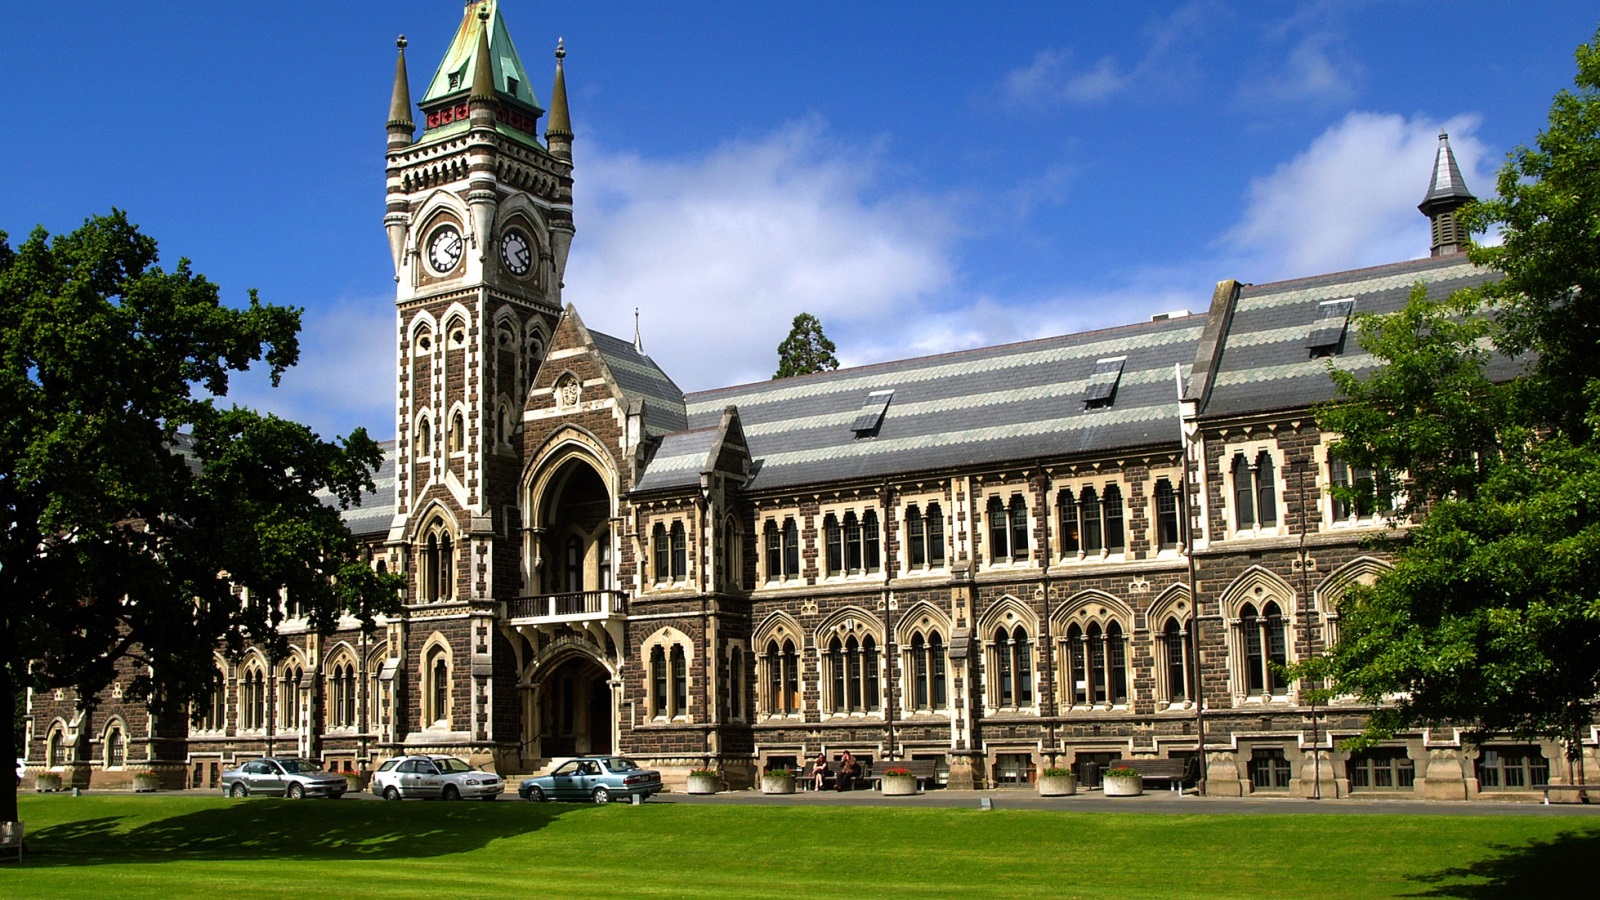 تعد جامعة أوتاغو إحدى الجامعات النيوزلندية الرائدة في مجال البحوث، وثانيها ظهورًا في التصنيف العالمي للجامعات عند المرتبة 169،وإحدى أفضل عشر جامعات في العالم في تخصص الرياضة